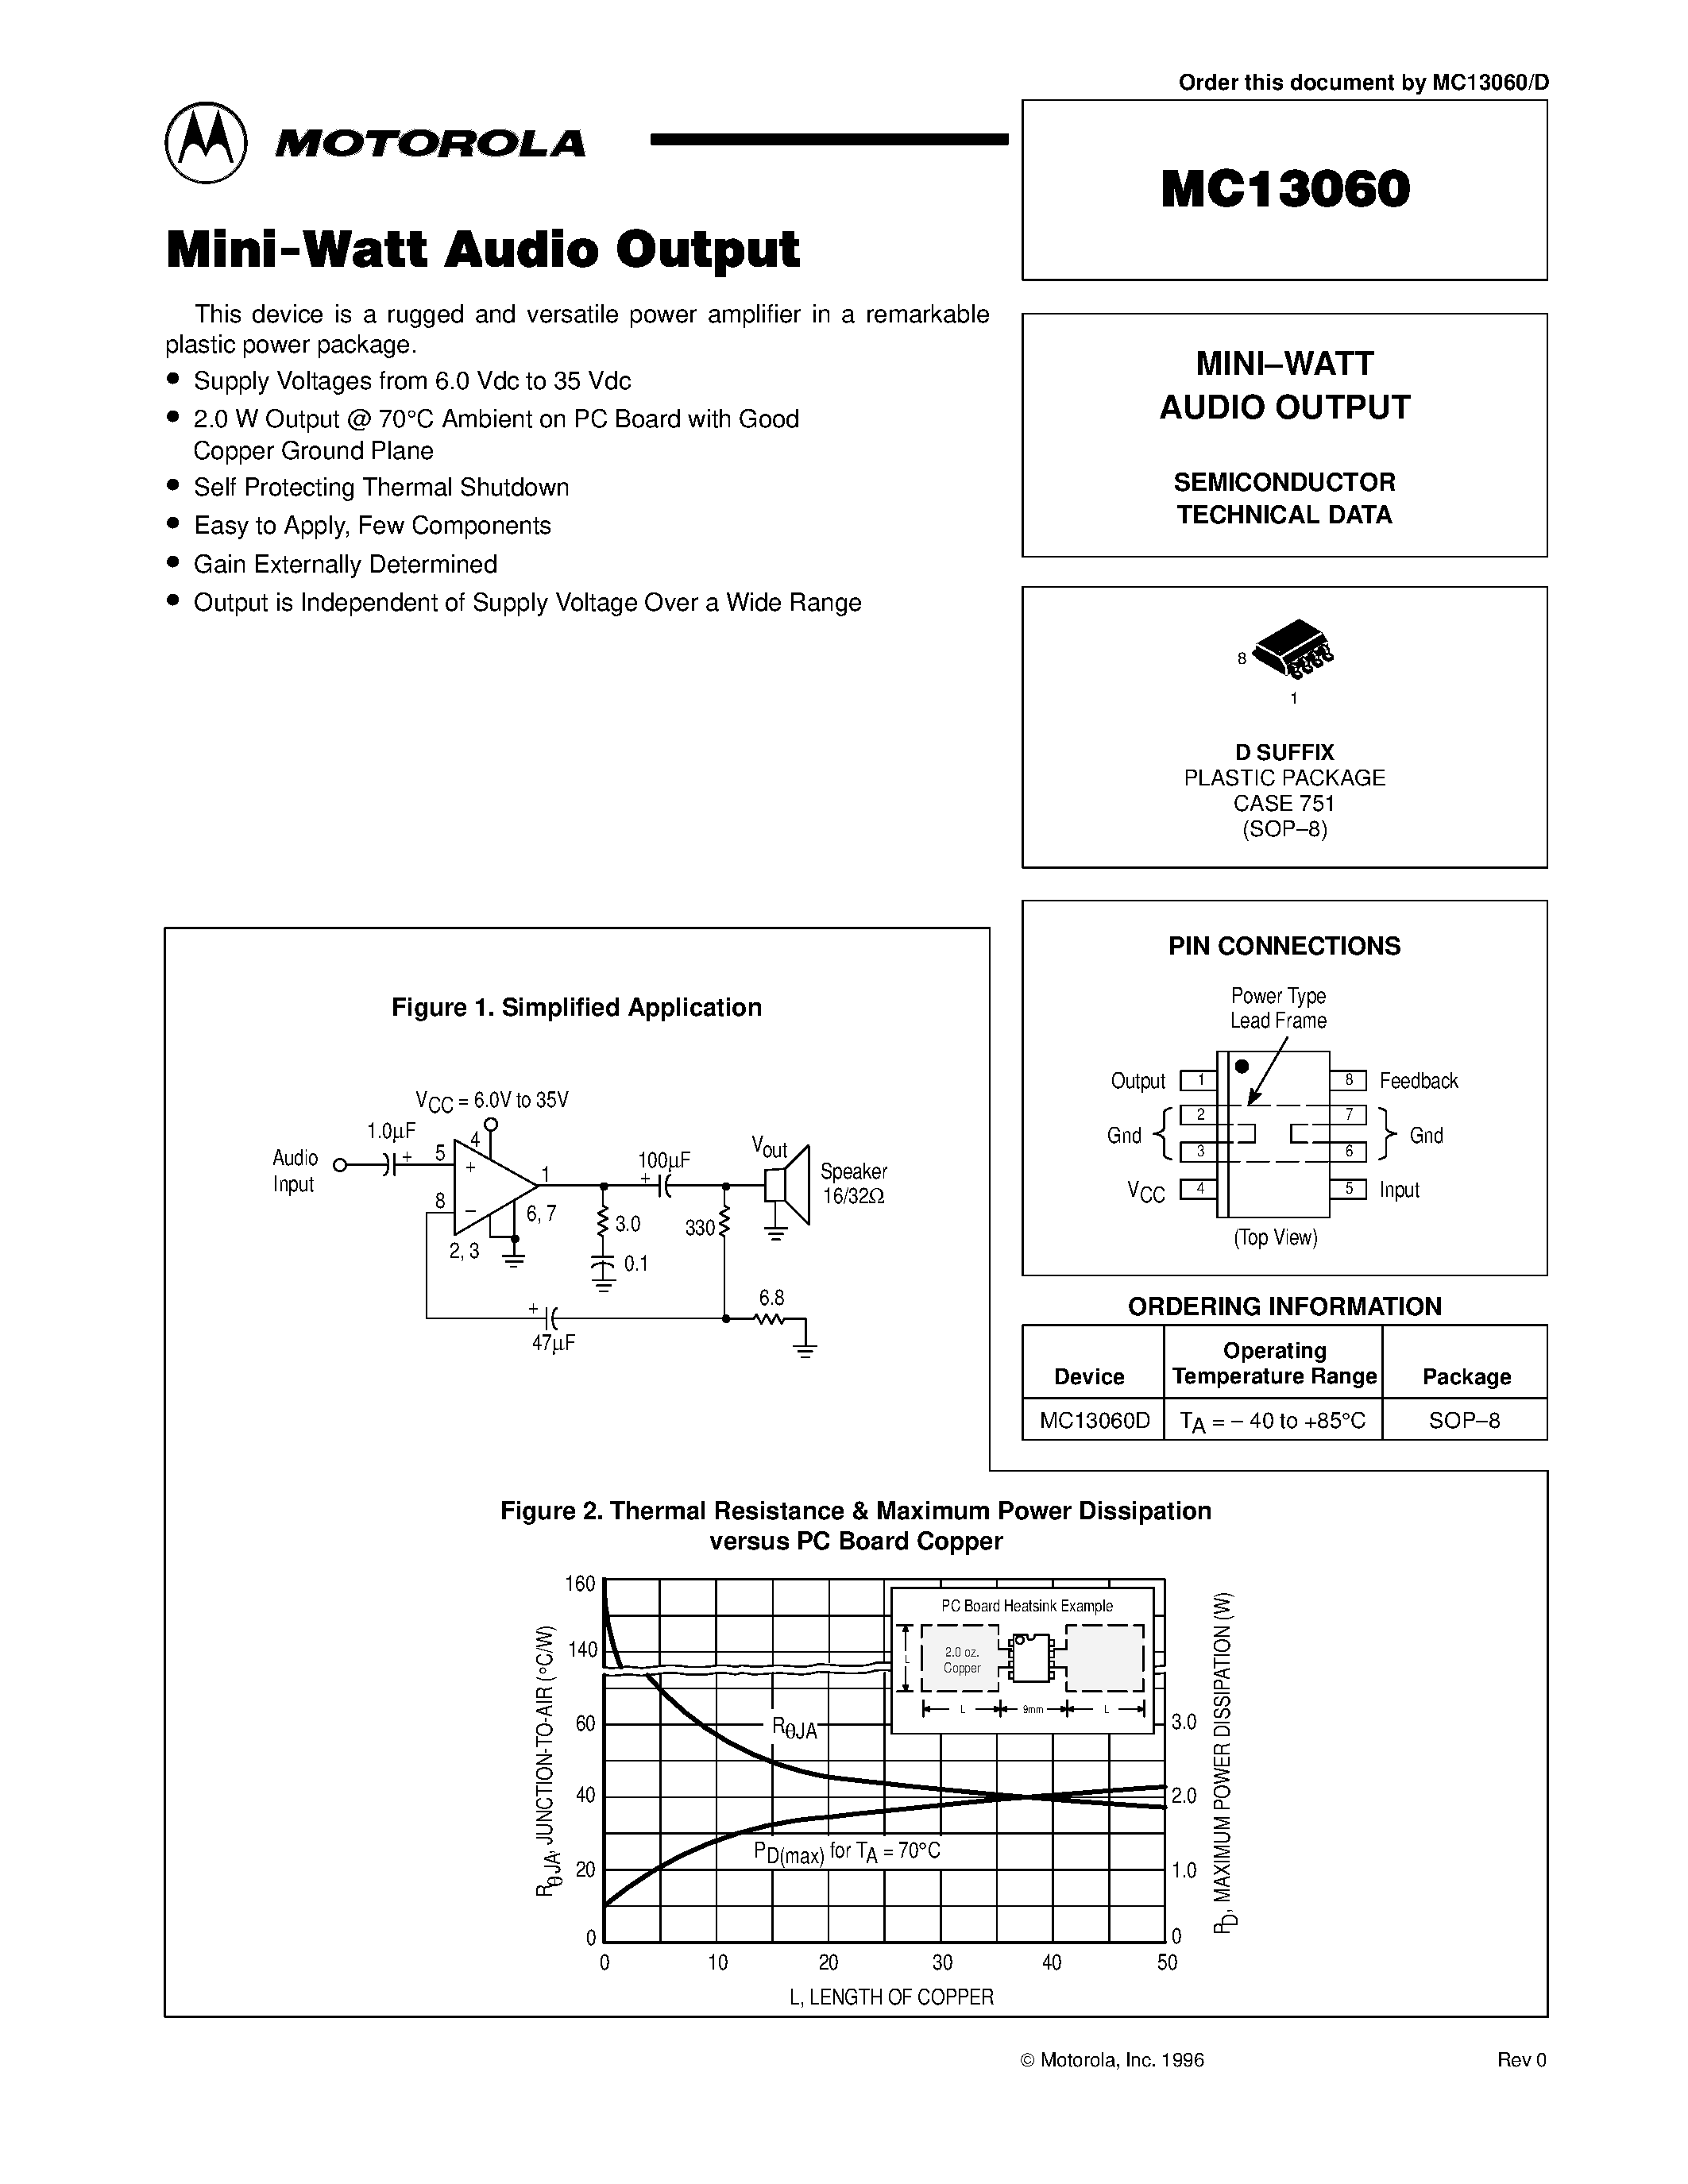 Datasheet MC13060D - MINI-WATT AUDIO OUTPUT page 1